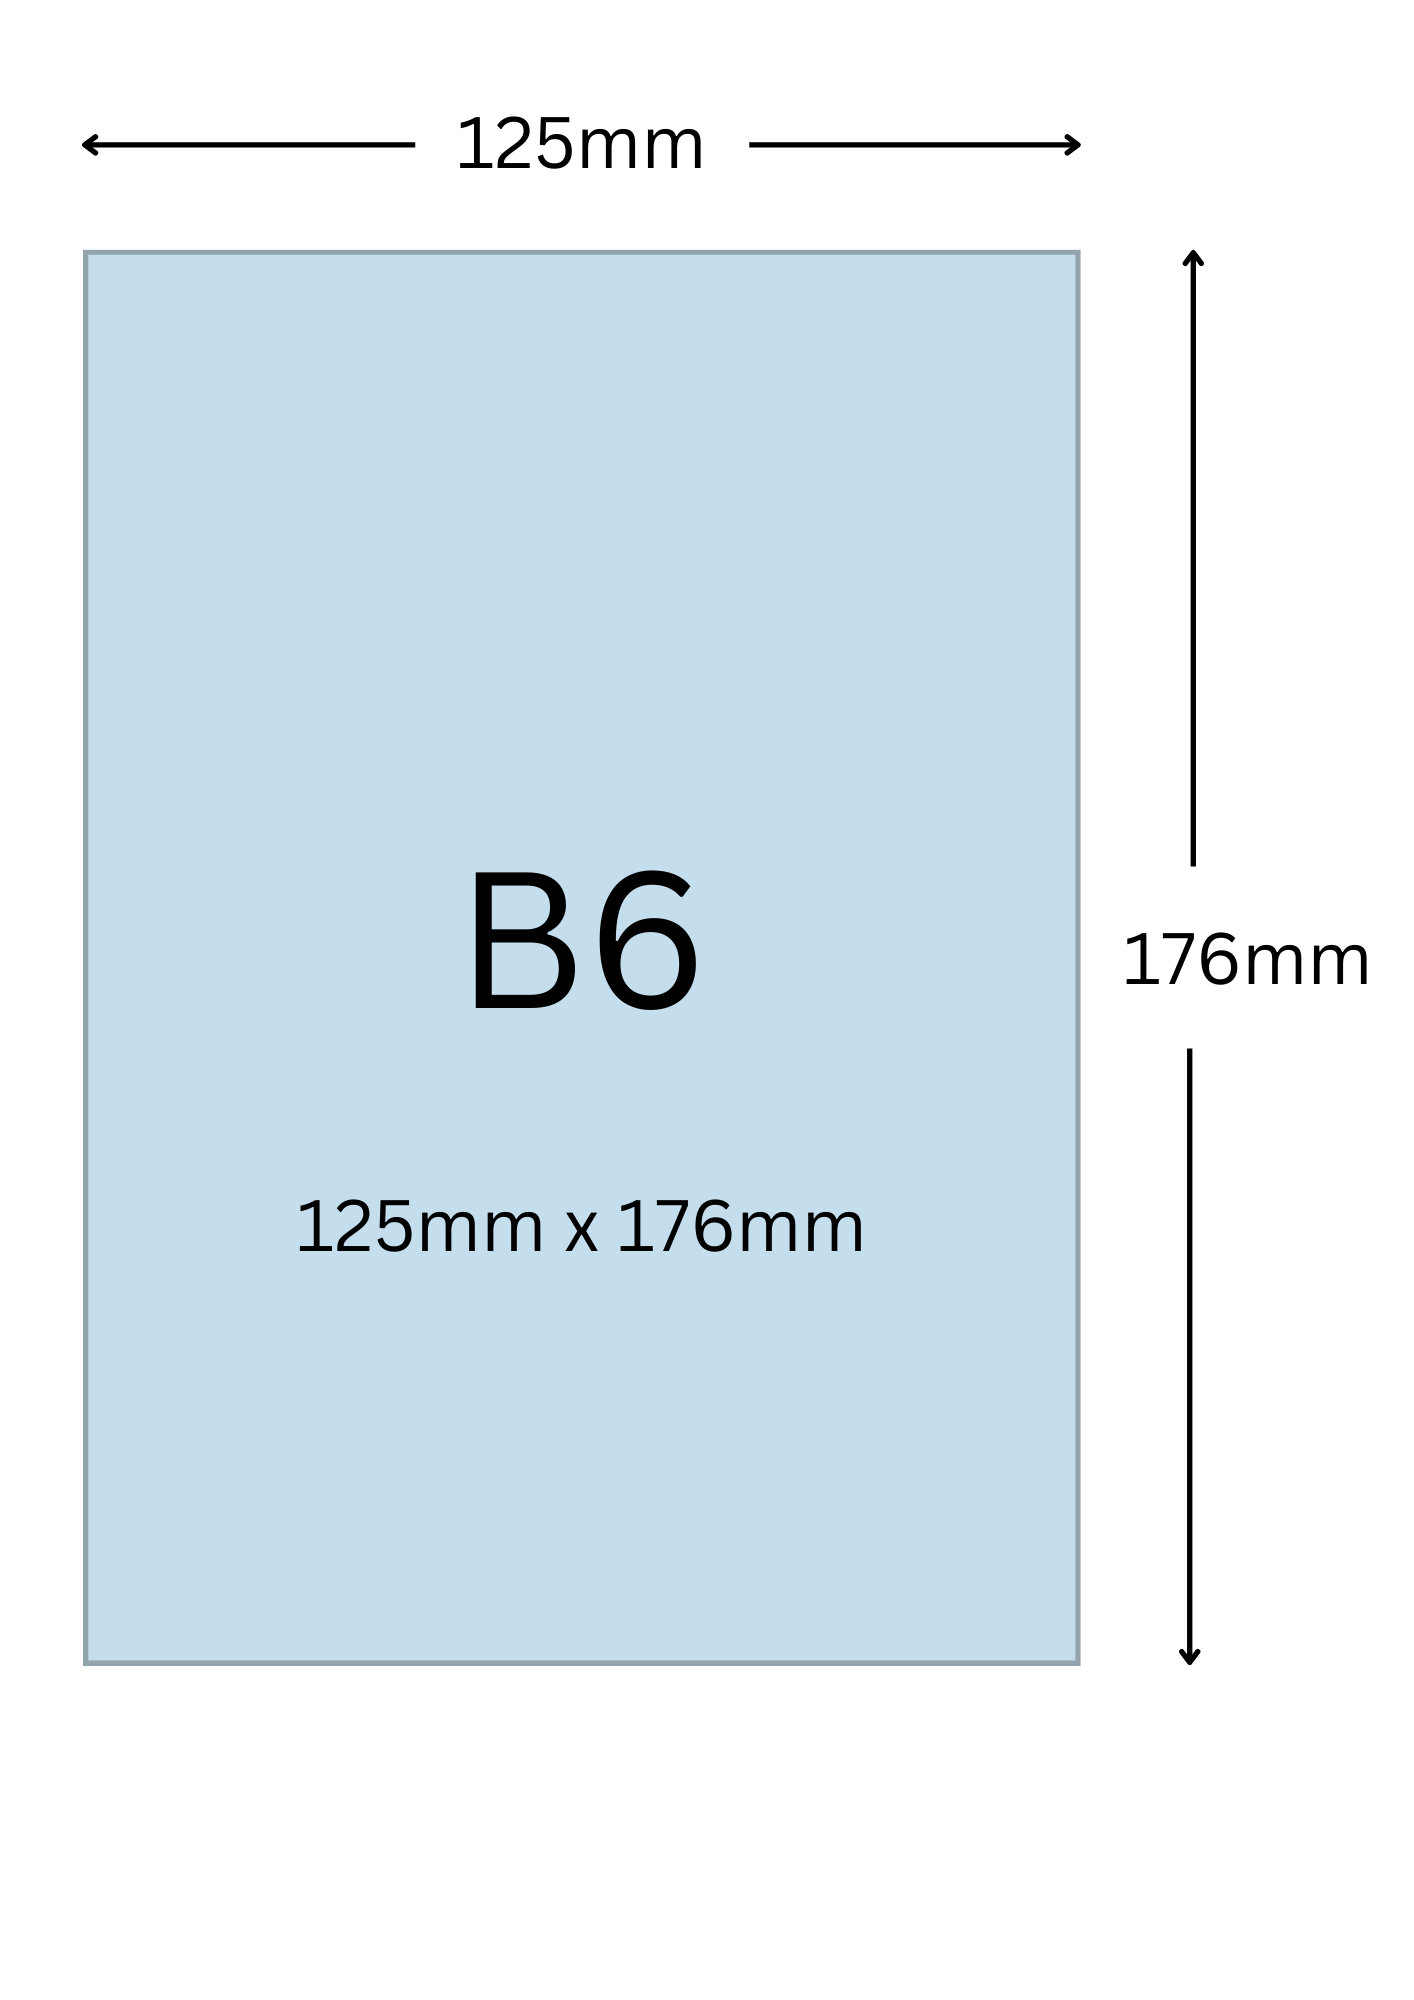 B6尺寸公分, B6紙張尺寸大小, B6紙張對應開數是幾開